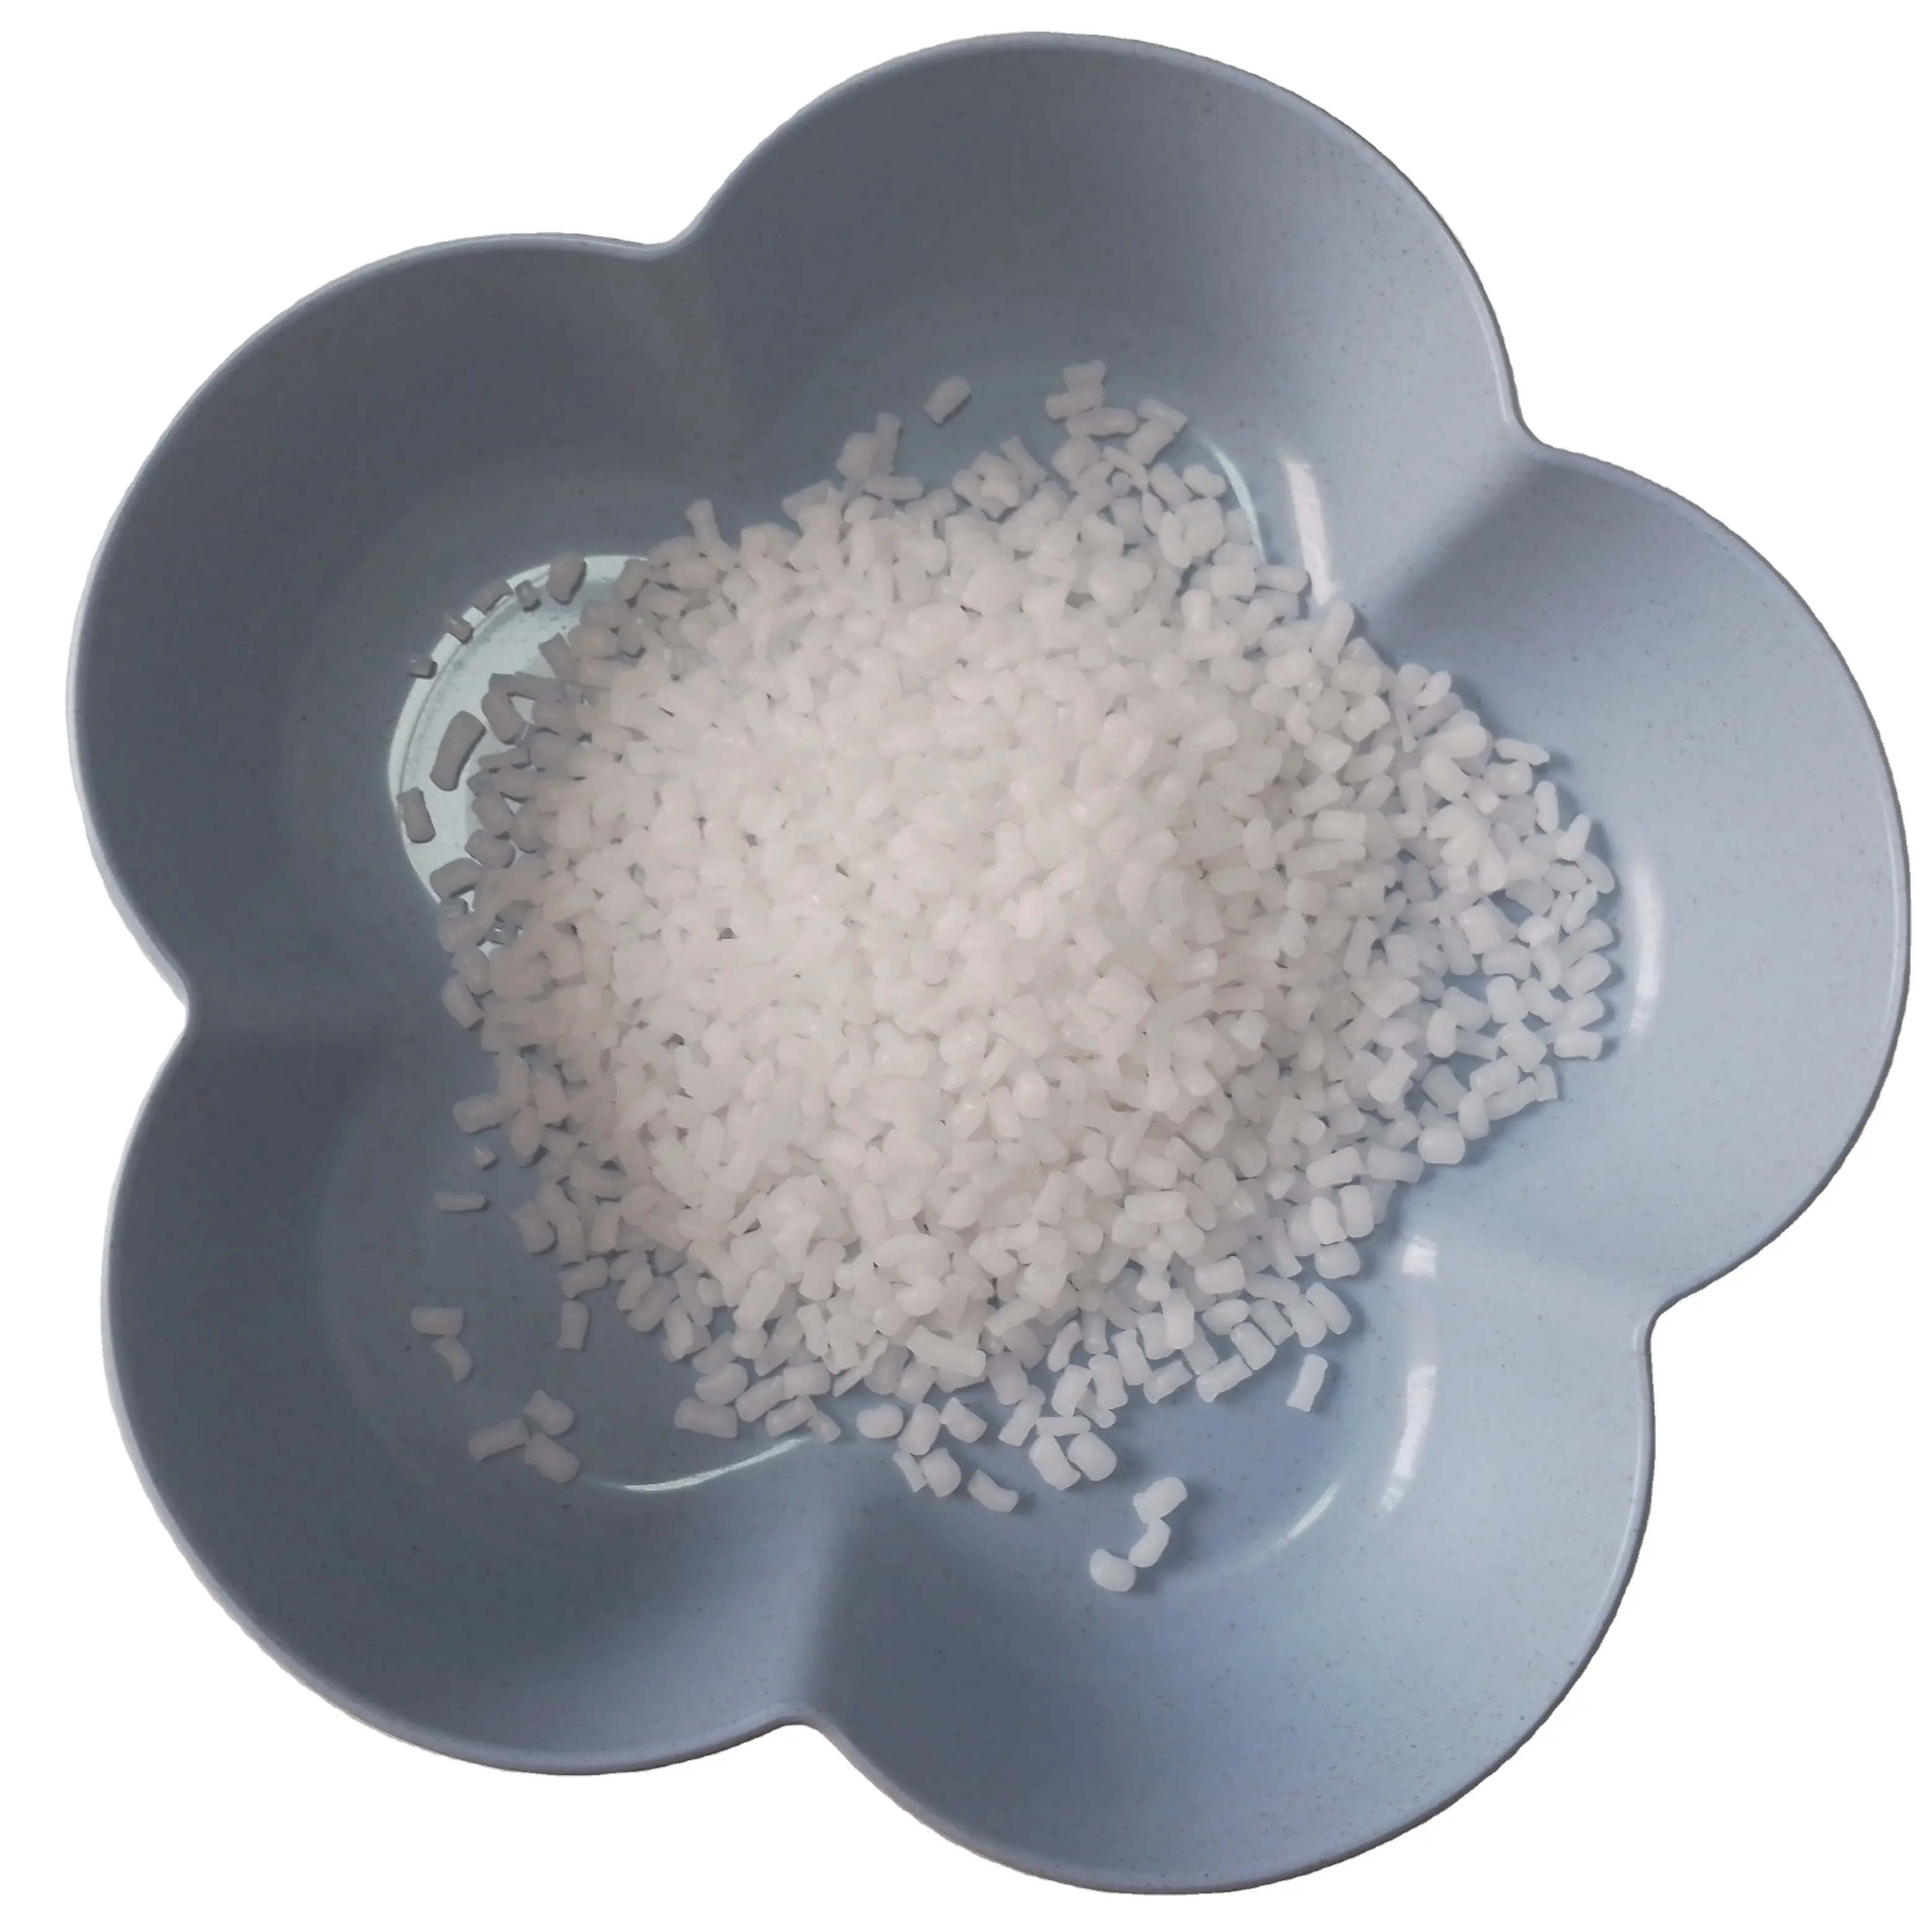 PP hj4012 lmpact Copolymer tiêm cấp phổ cấp Polypropylene nhựa Nguyên liệu PP hj4012